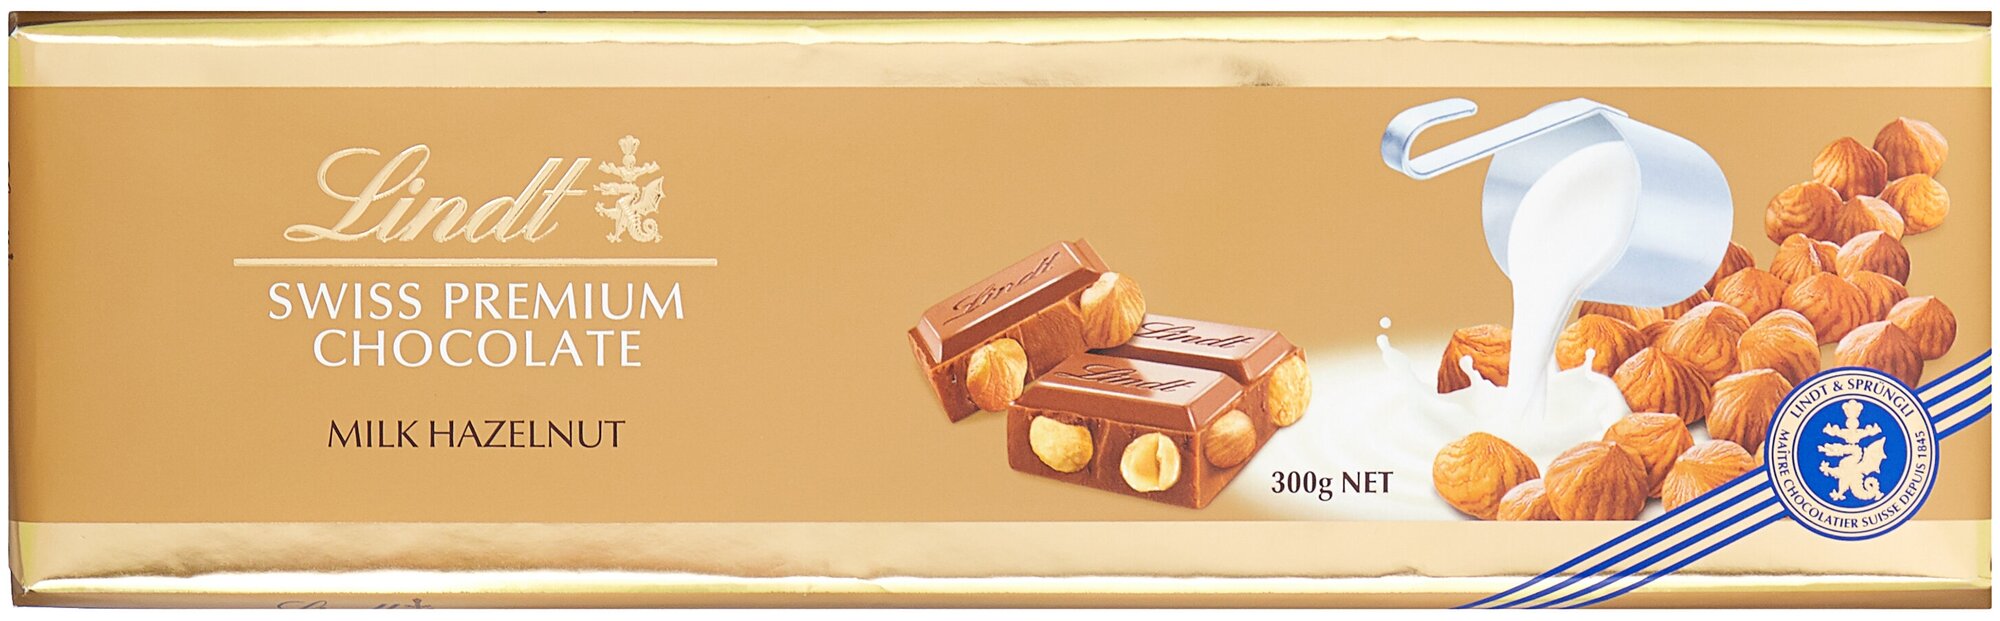 Шоколад Lindt Gold Swiss Premium Milk - Hazelnut Chocolate / Линд Премиум Молочный с цельным фундуком, 300 гр (Швейцария)